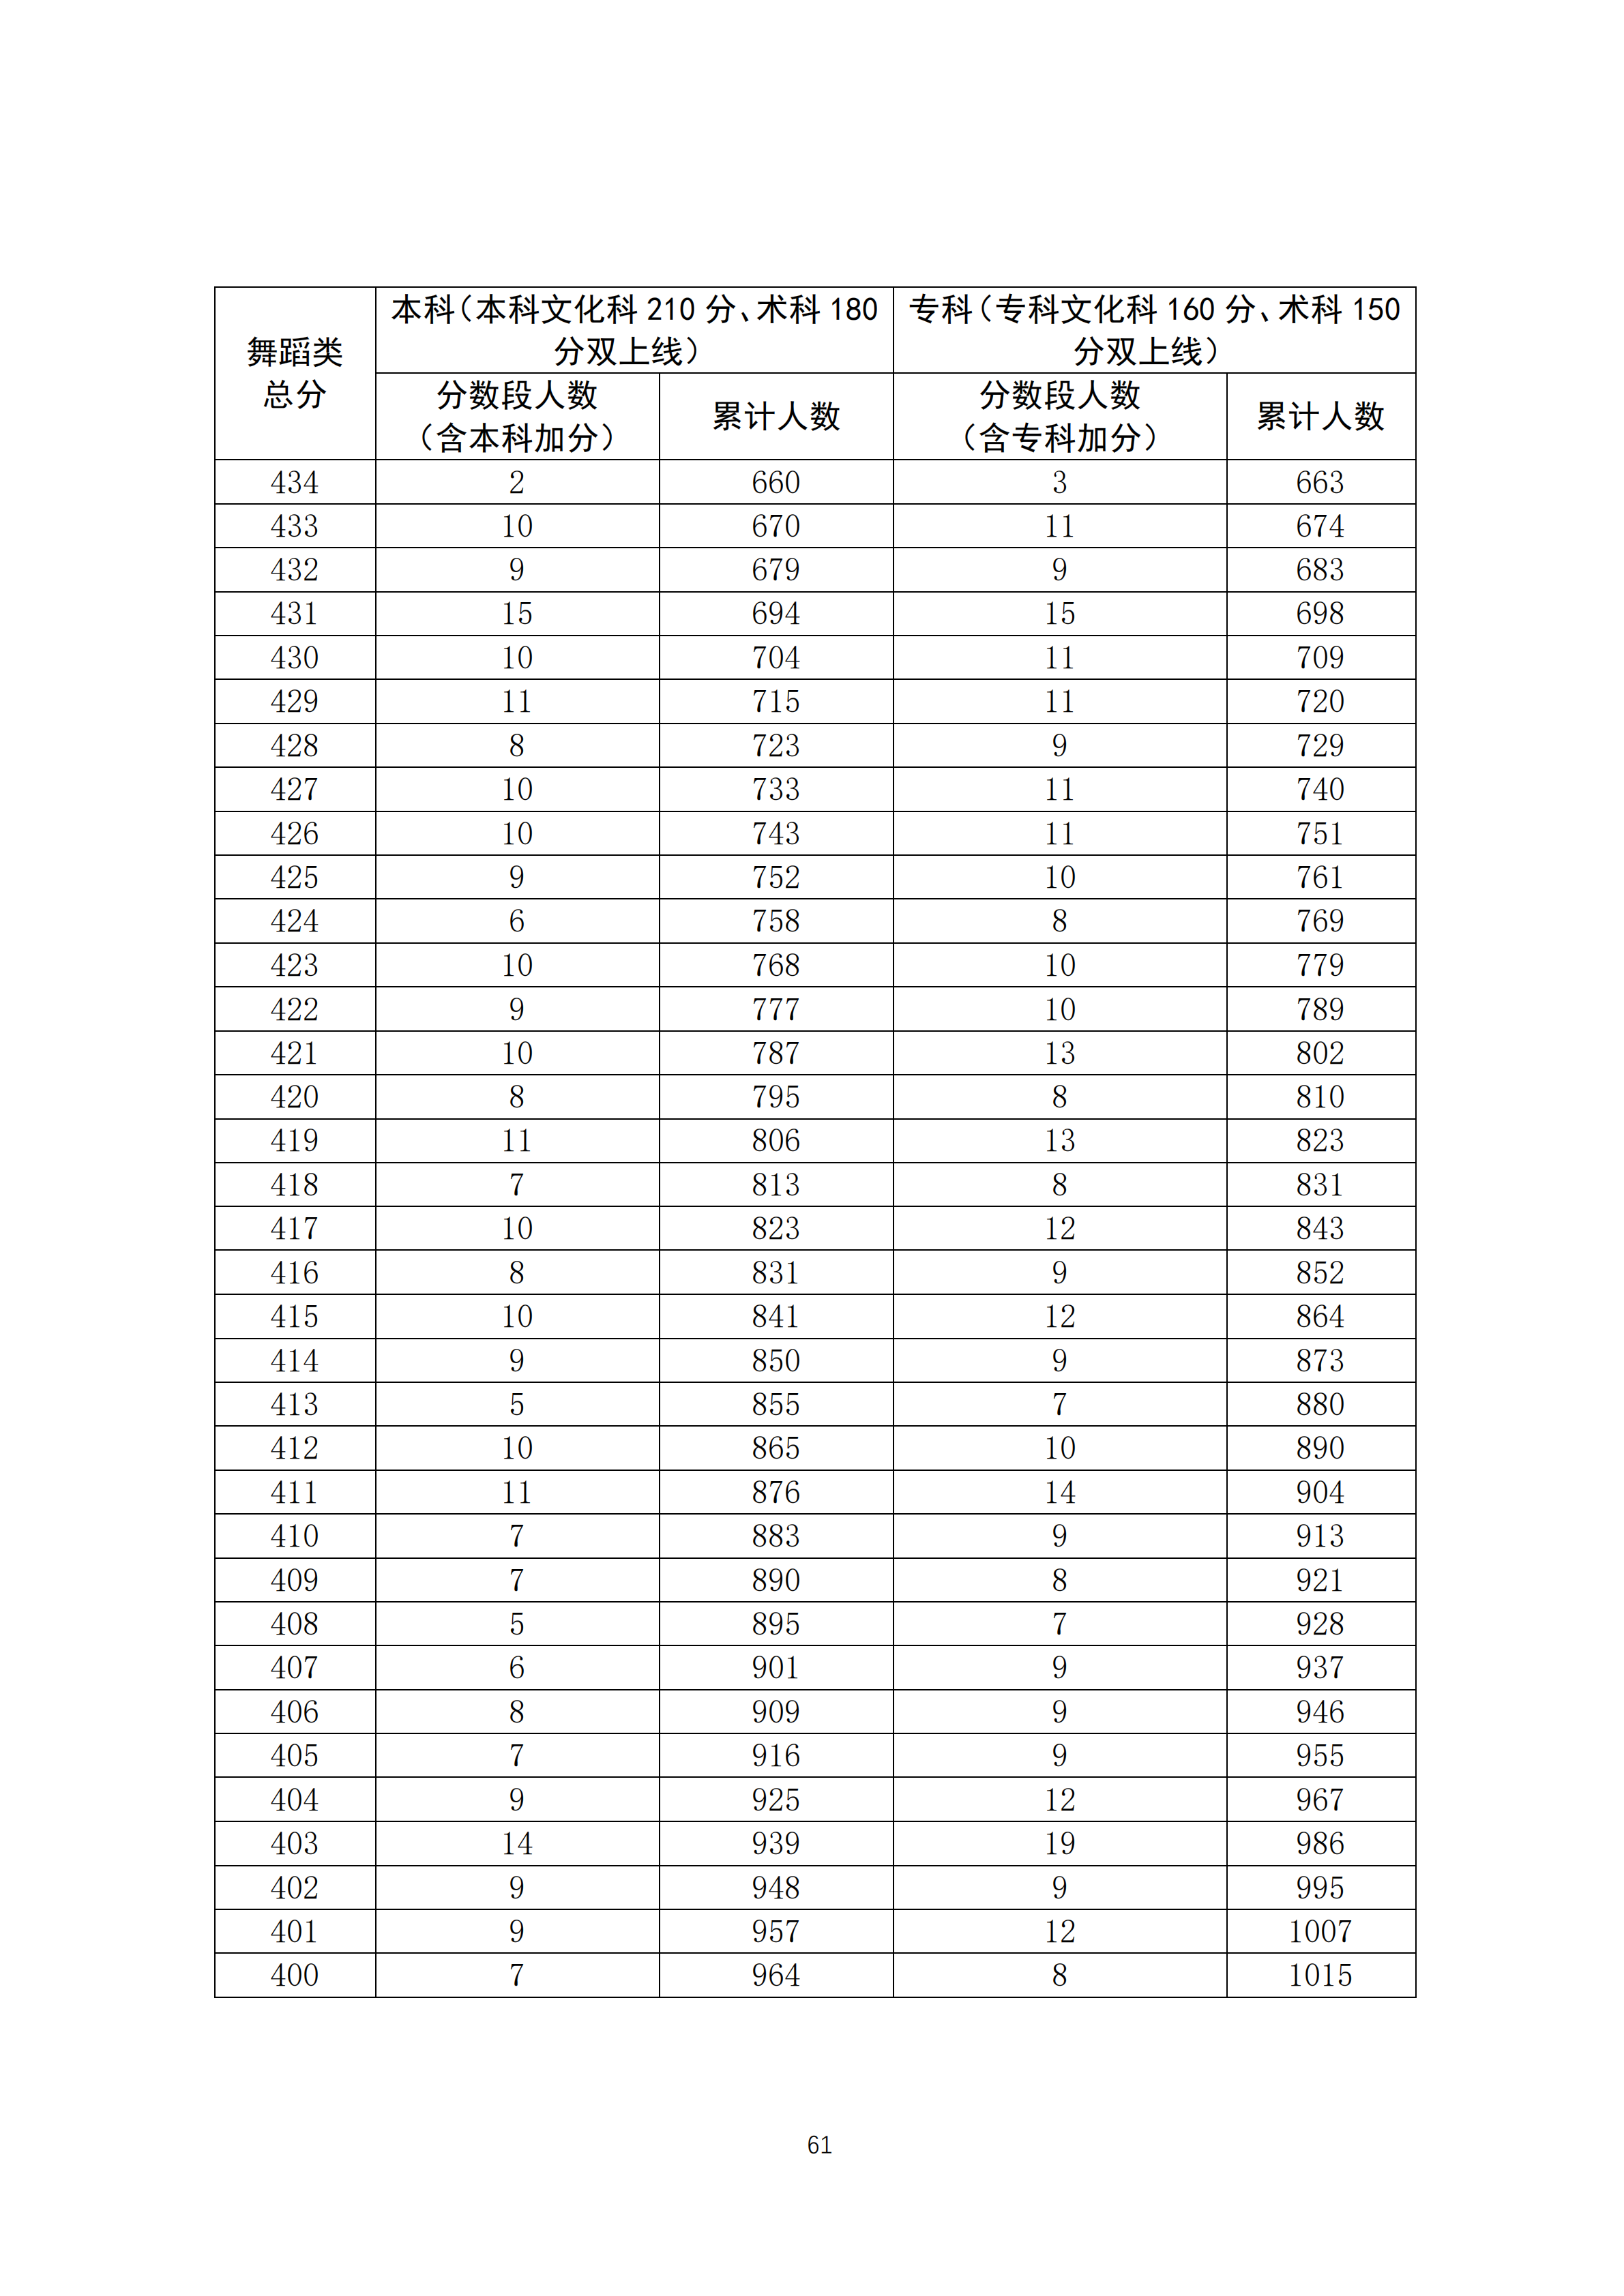 2020广东高考一分一段表 舞蹈类成绩排名及累计考生人数